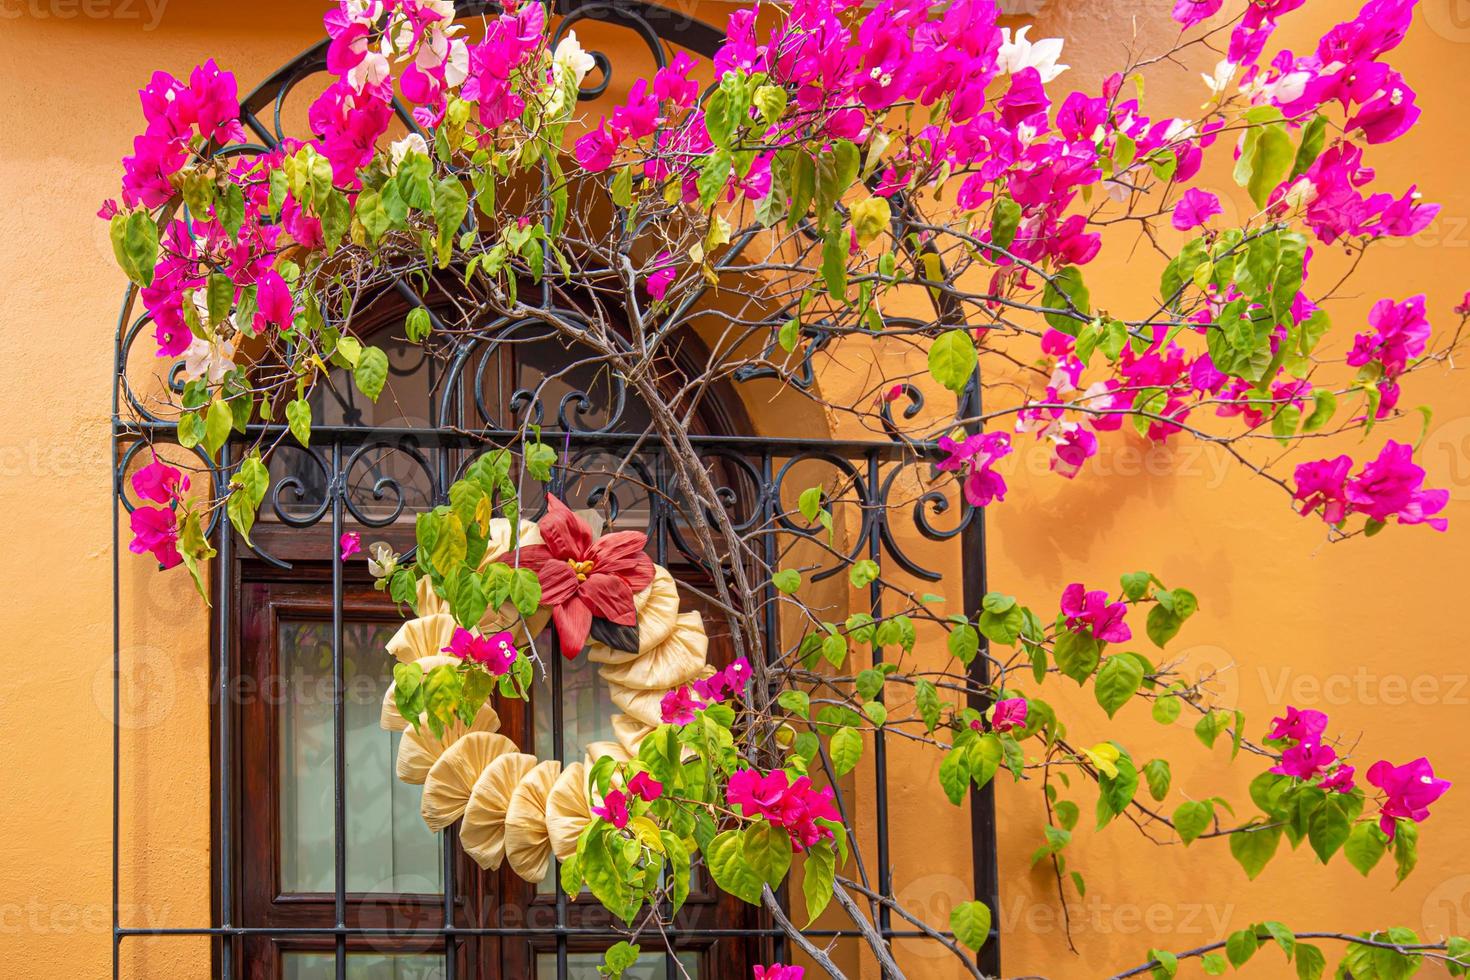 oaxaca, mexico, schilderachtige oude stadsstraten en kleurrijke koloniale gebouwen in het historische stadscentrum foto